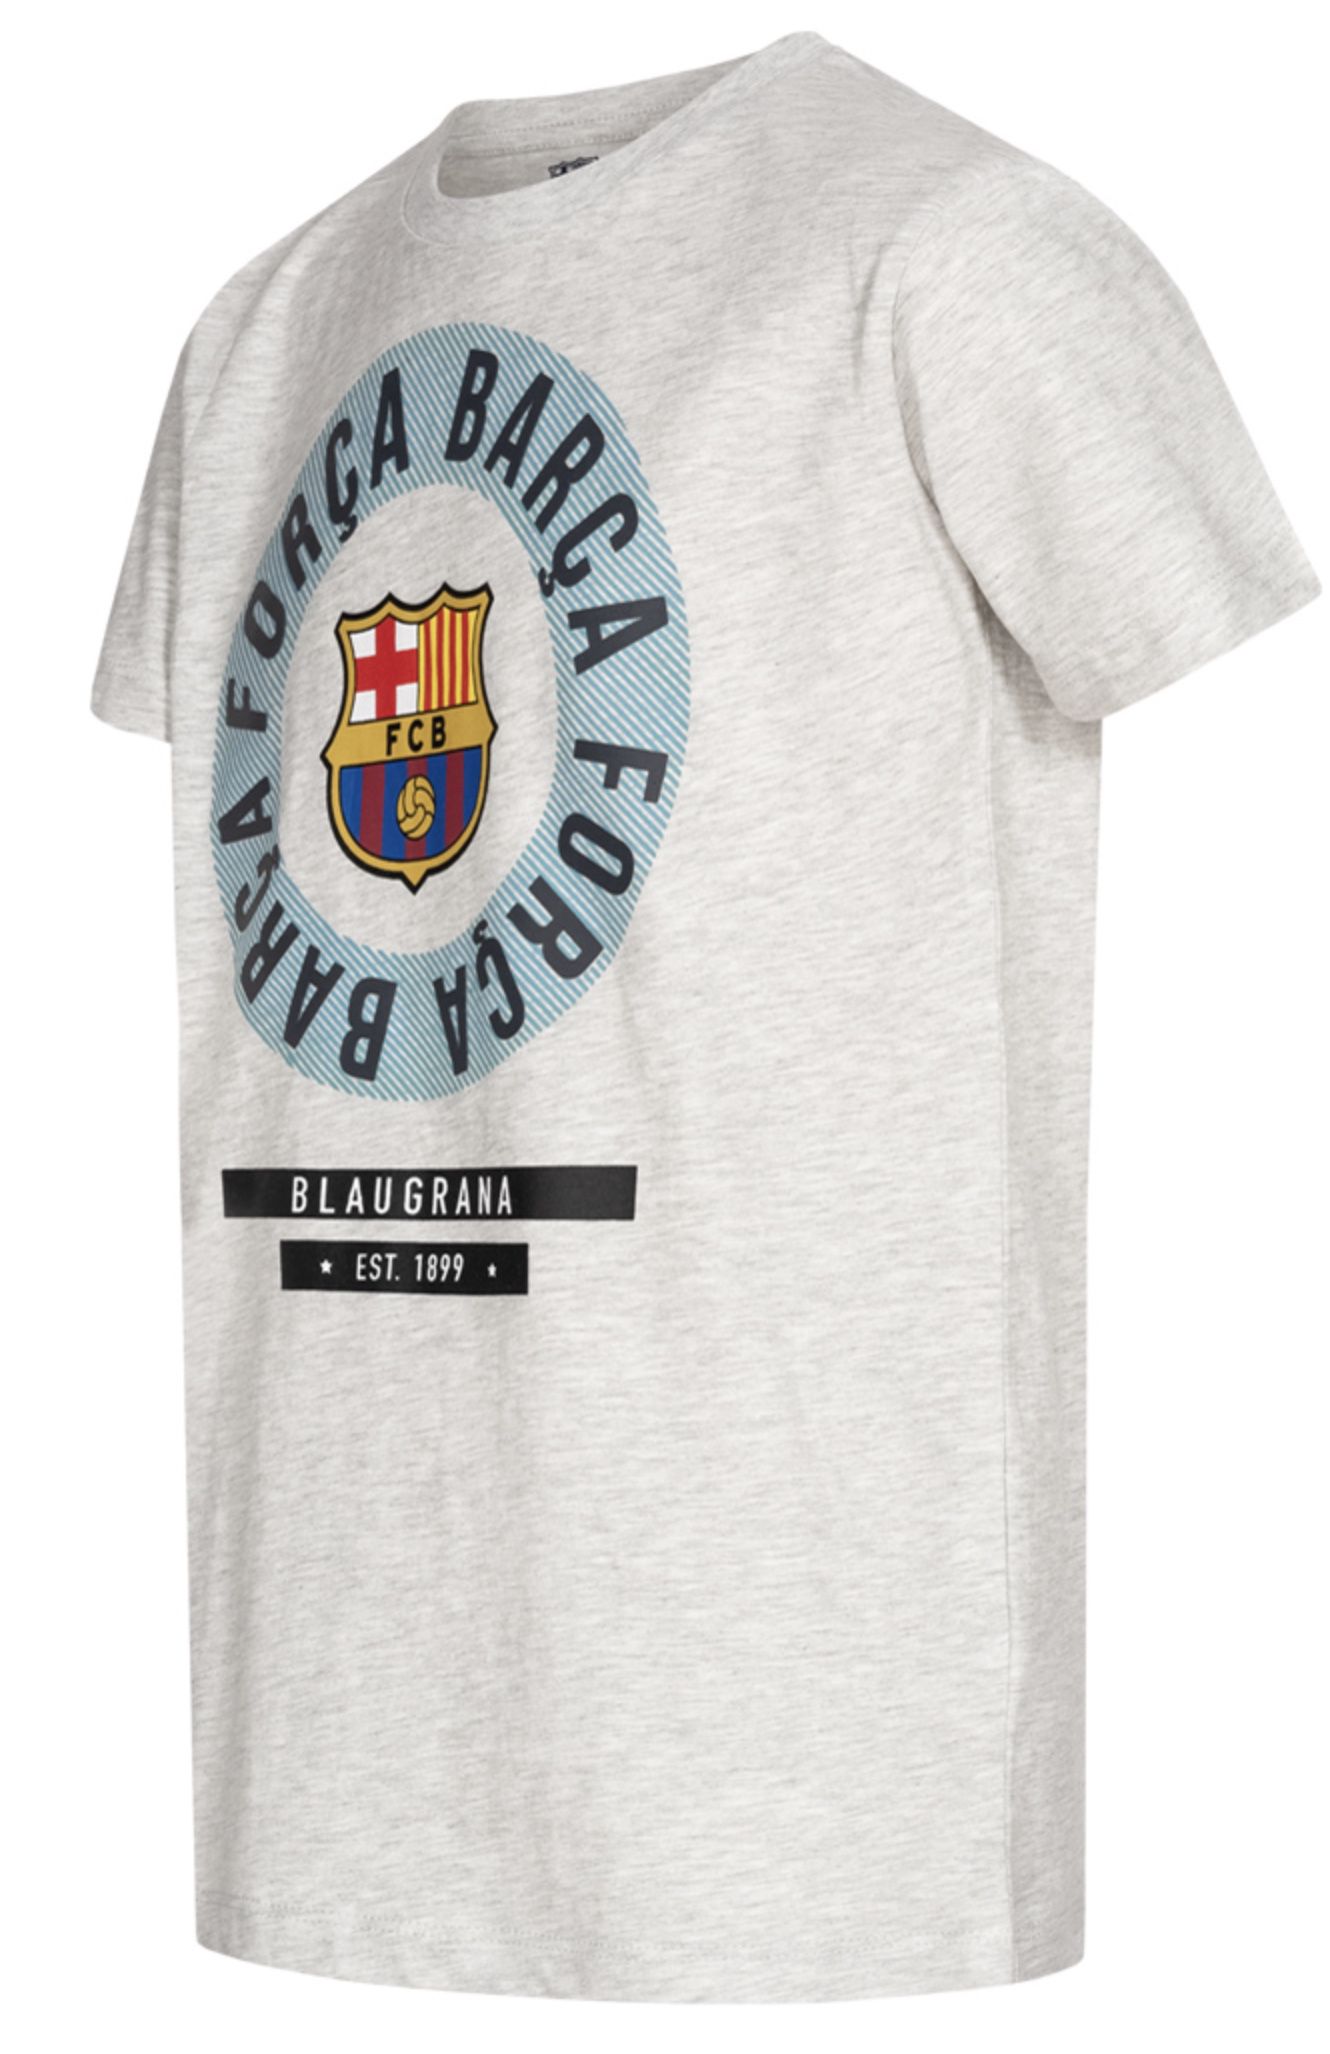 FC Barcelona Emblem Jungen T Shirt für 7,28€ (statt 12€)